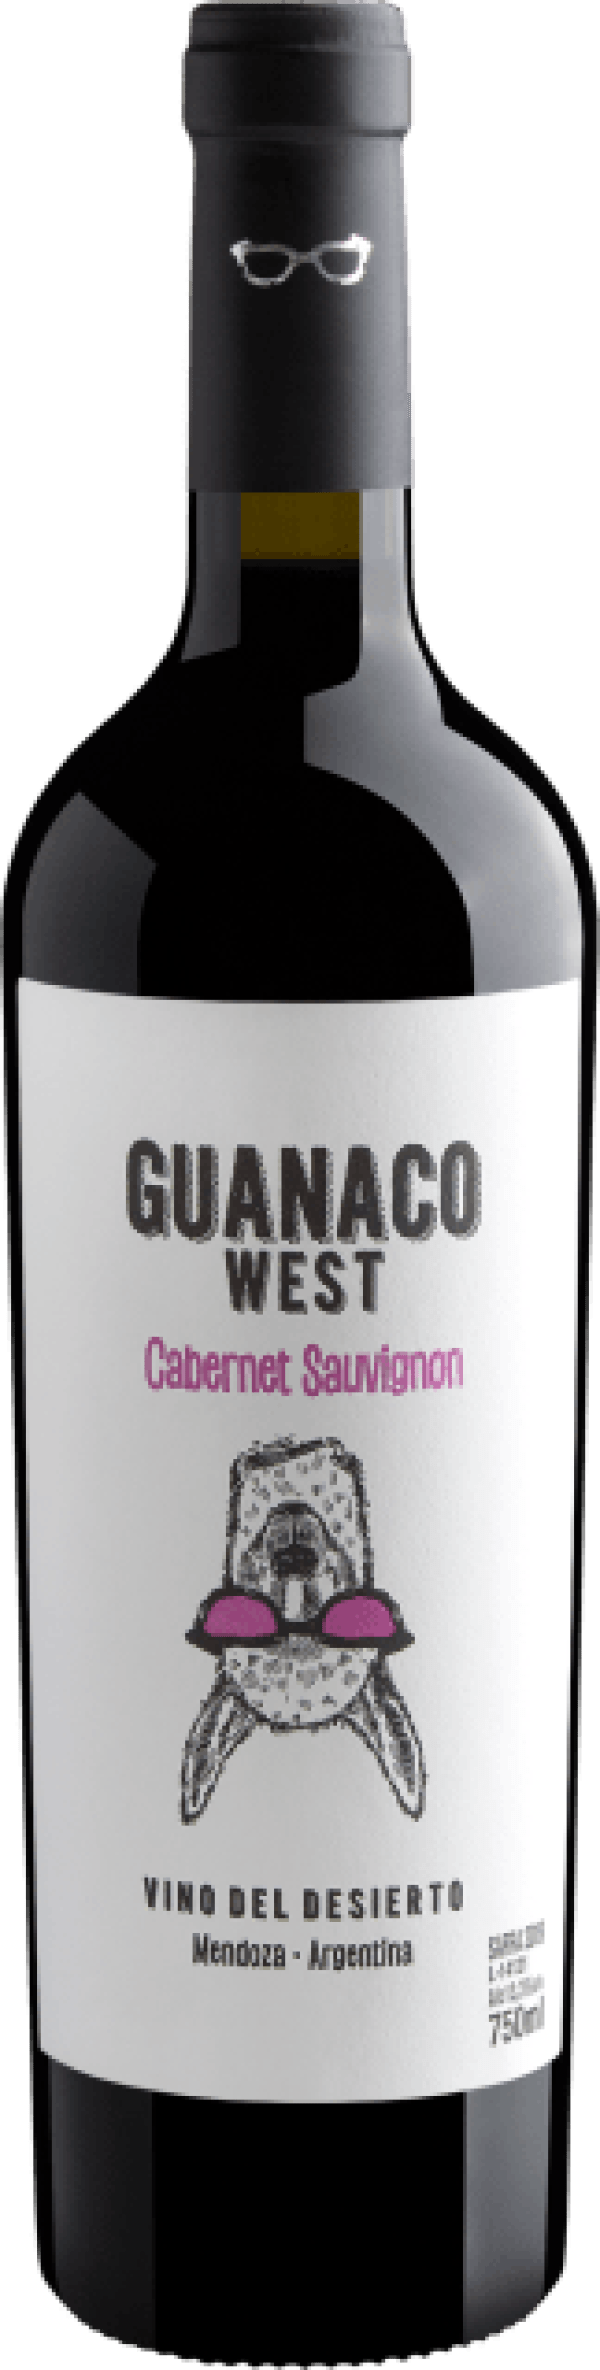 Guanaco West Cabernet Sauvignon 2019